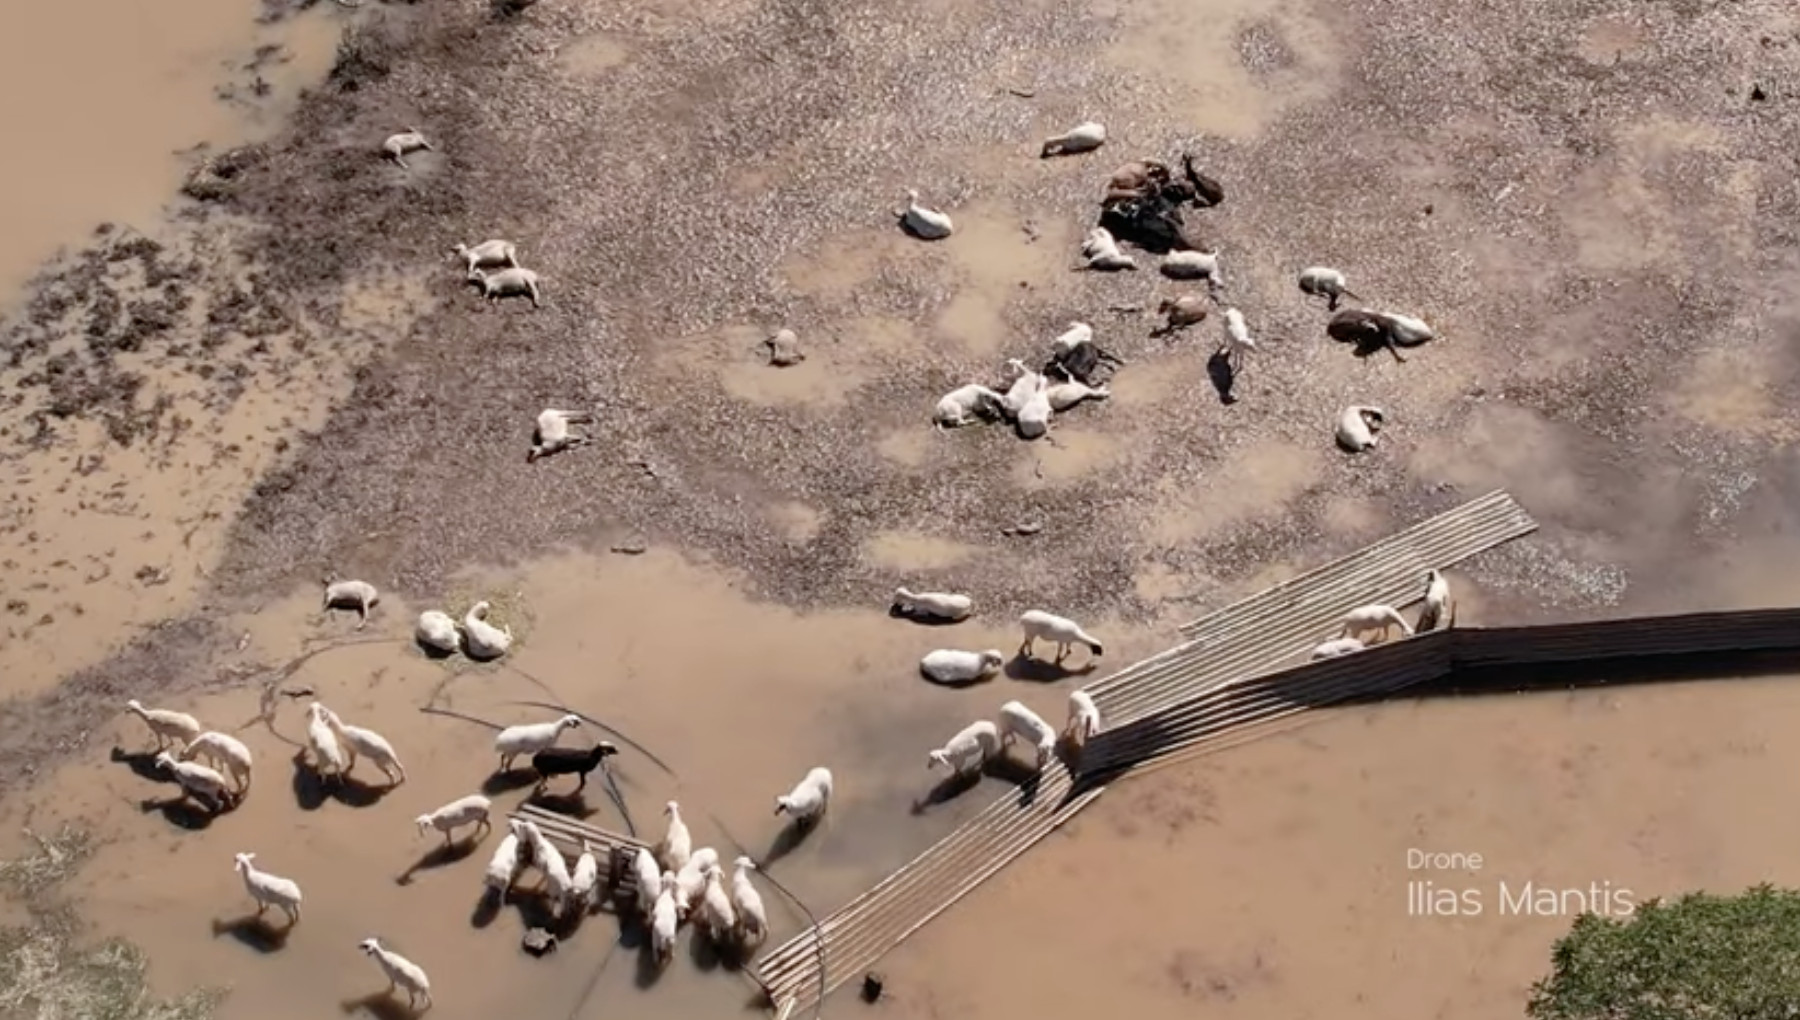 Κακοκαιρία Daniel: Απέραντο νεκροταφείο ζώων ο θεσσαλικός κάμπος - Εικόνες σοκ από ψηλά